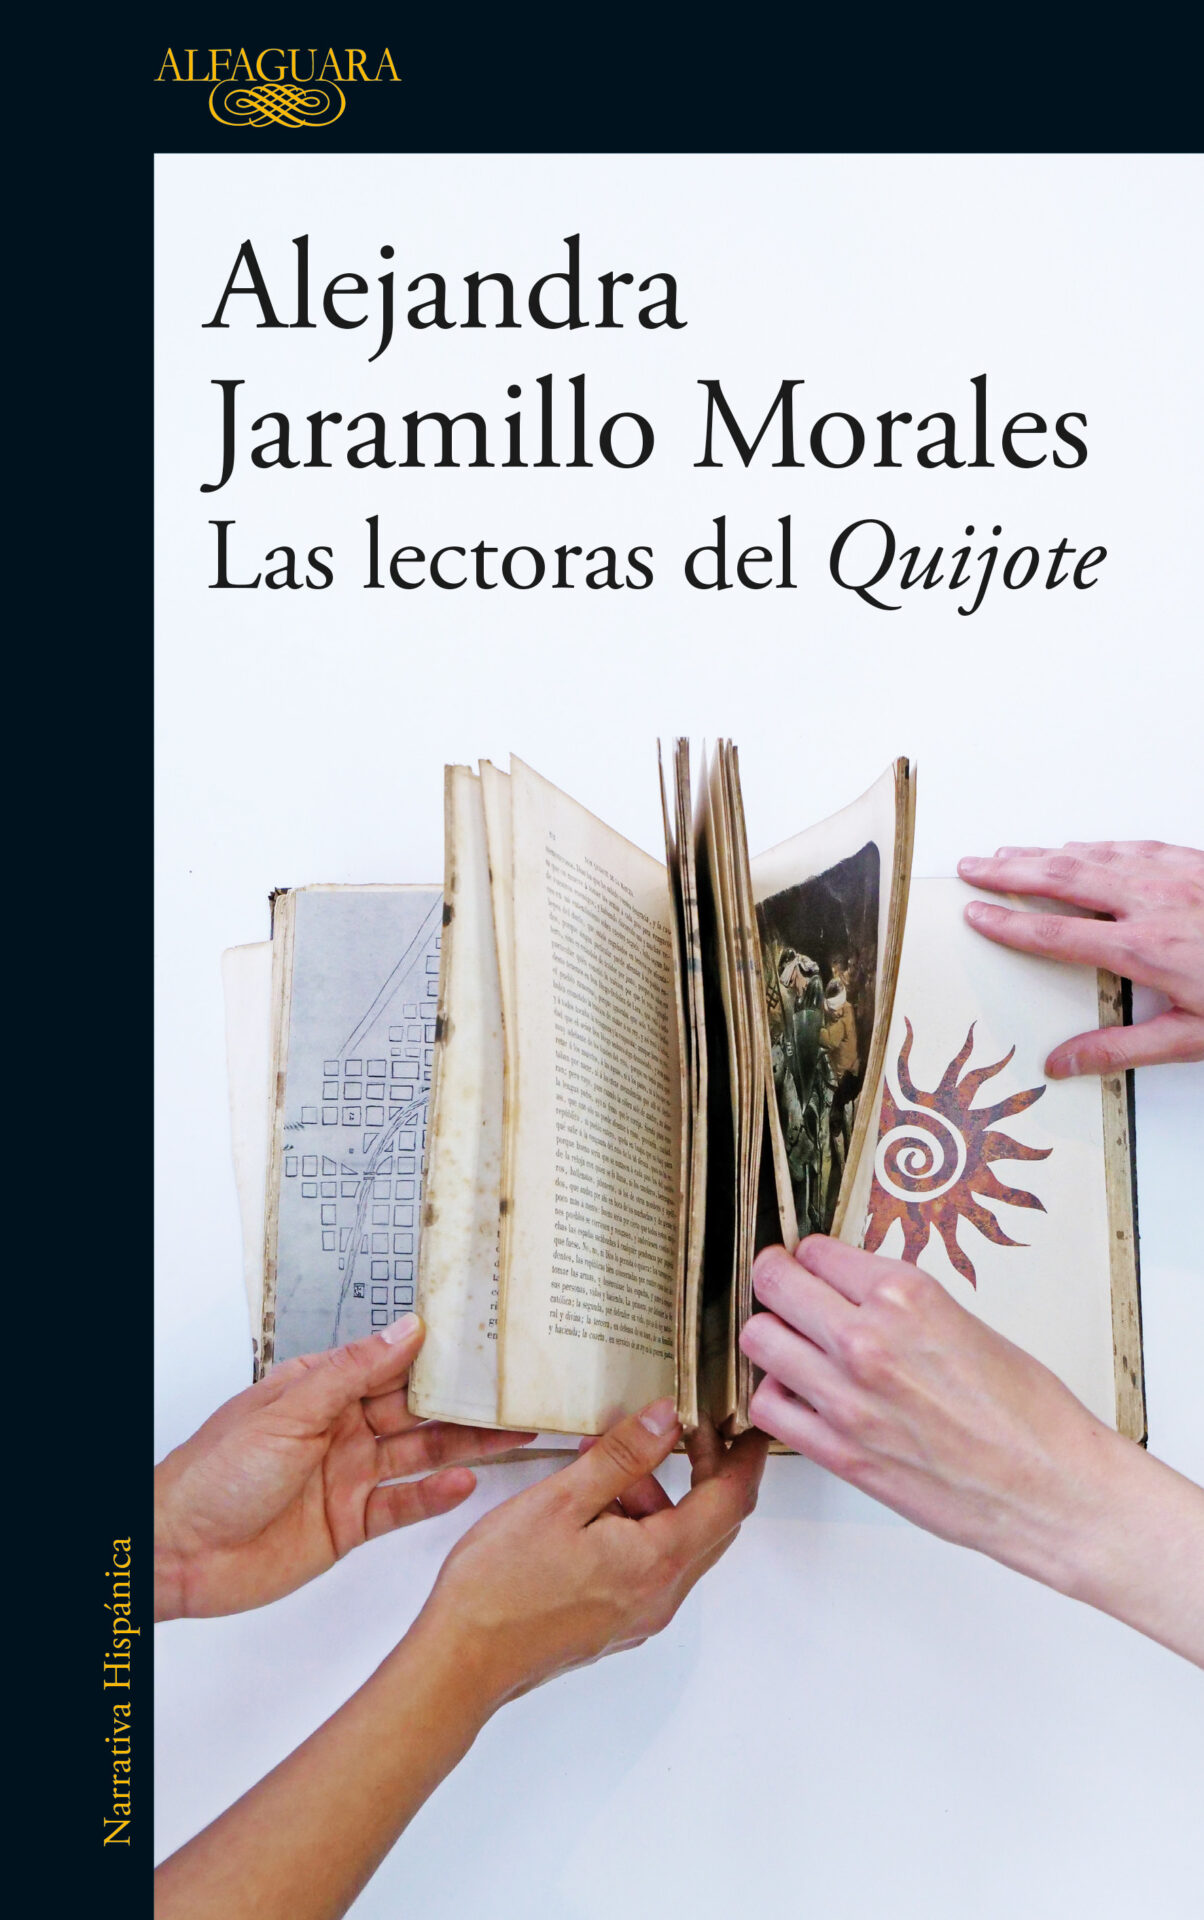 Las lectoras del Quijote by Alejandra Jaramillo Morales